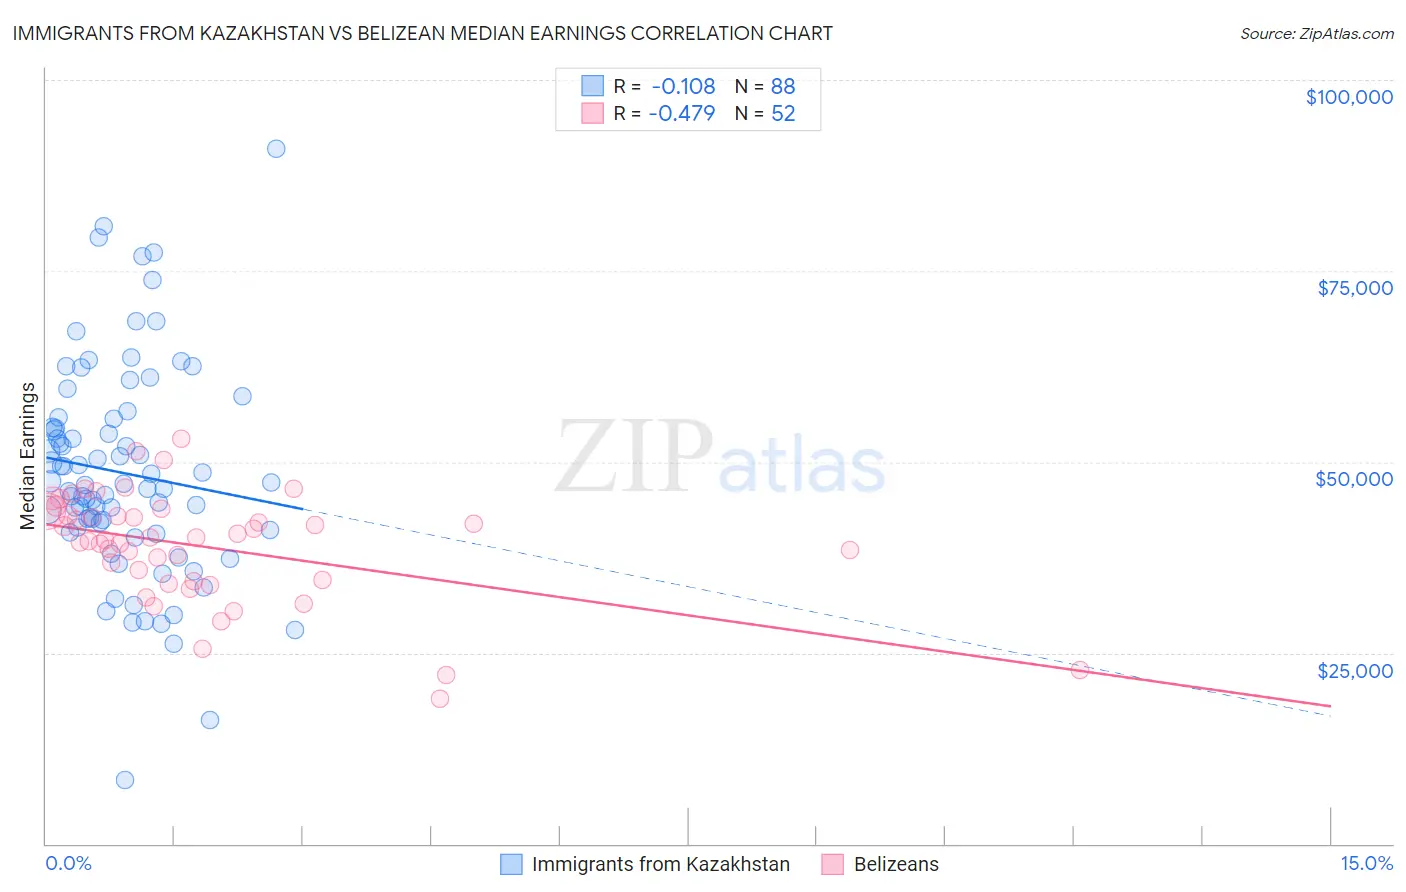 Immigrants from Kazakhstan vs Belizean Median Earnings